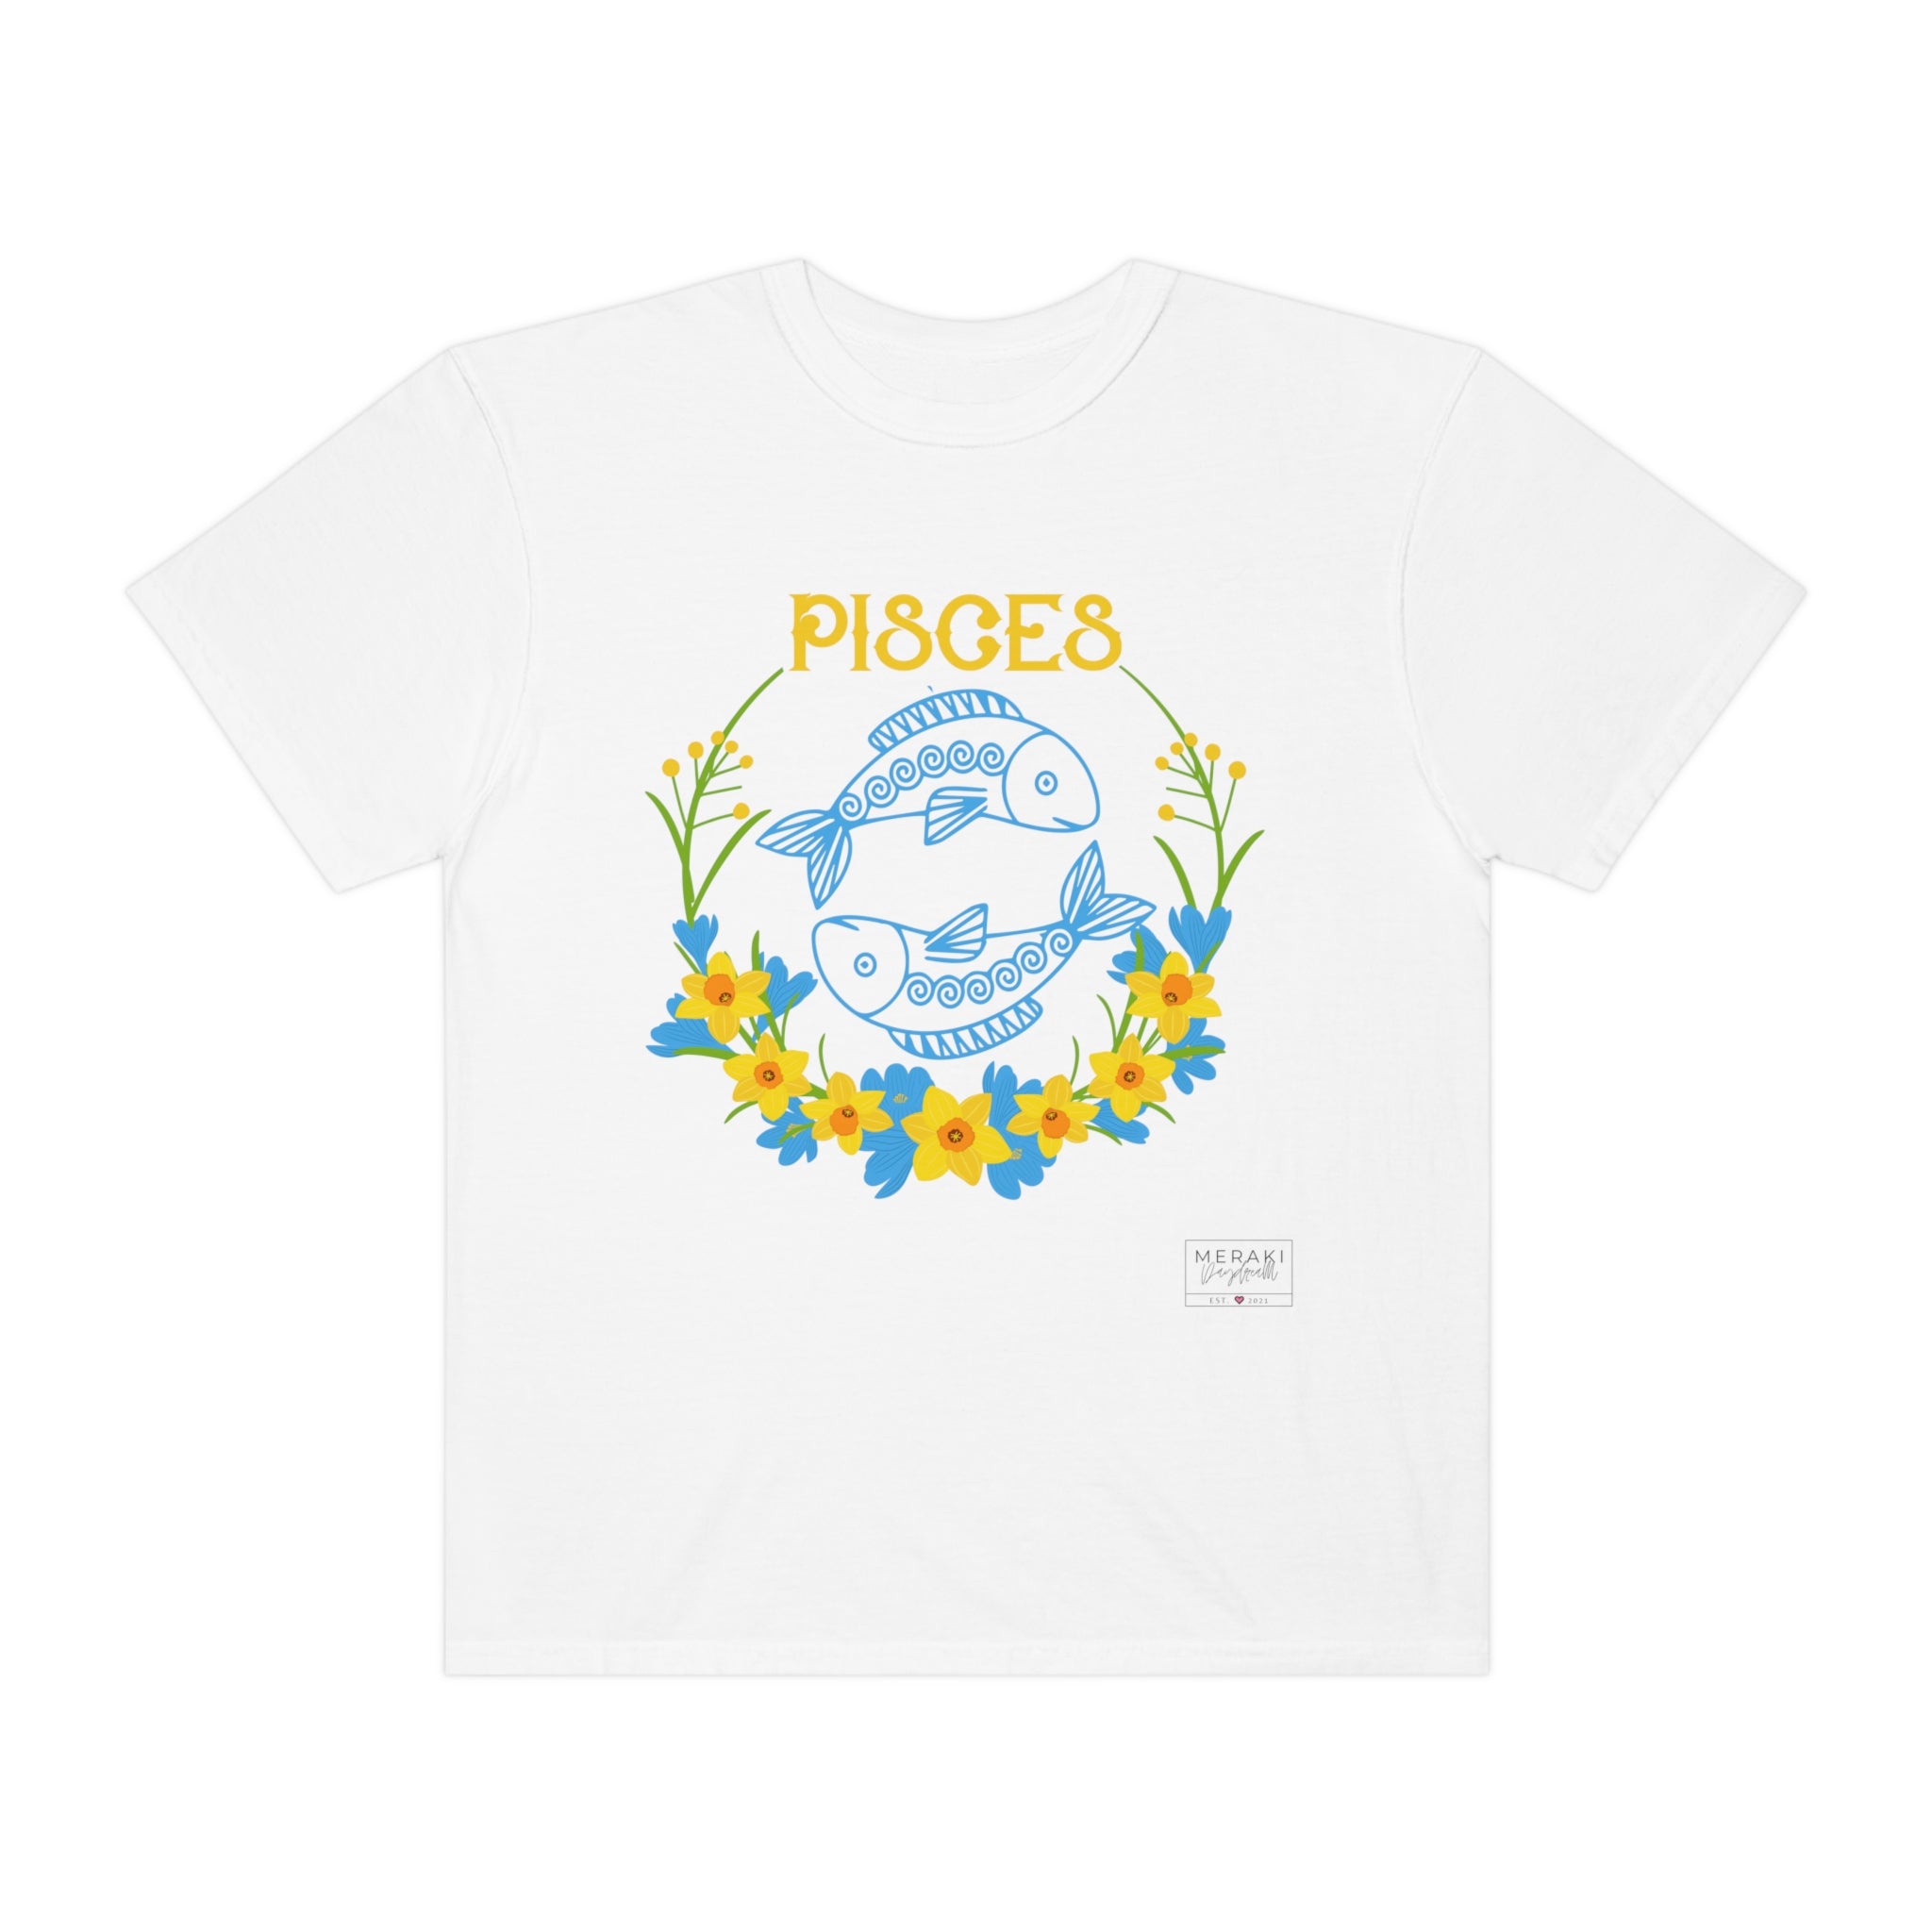 Unisex Pisces Zodiac Sign T-Shirt